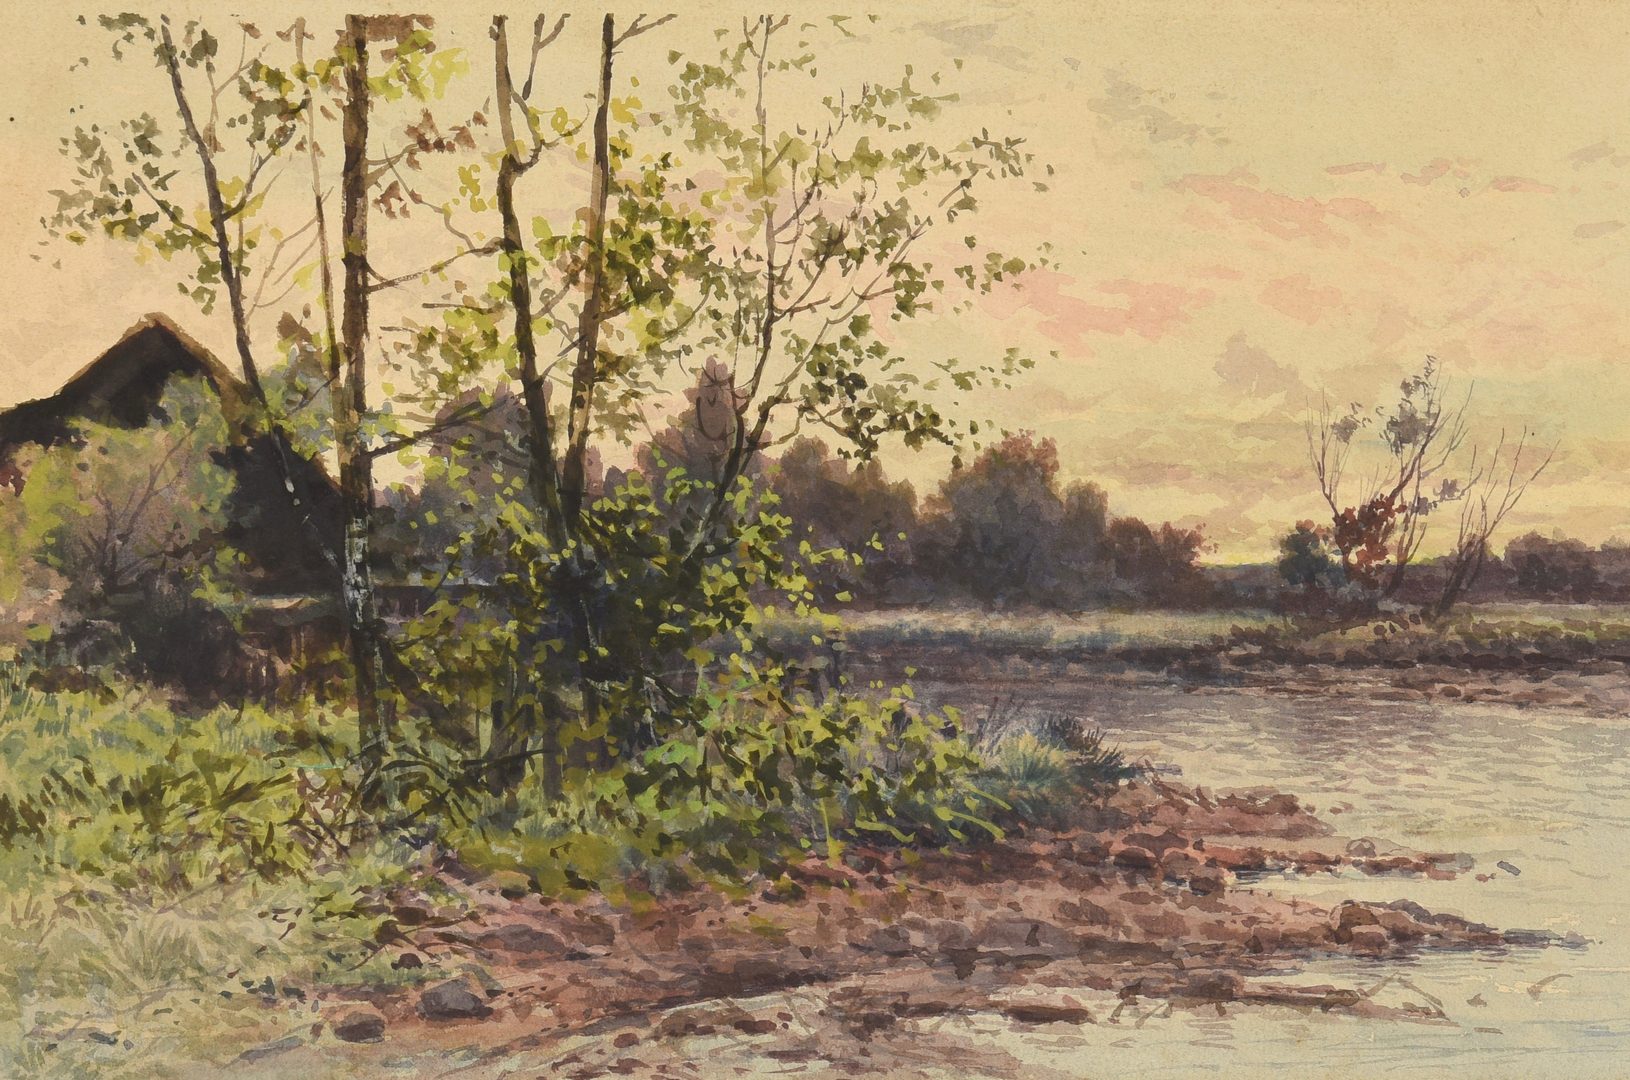 Lot 523: Arthur Diehl Watercolor of Waterway